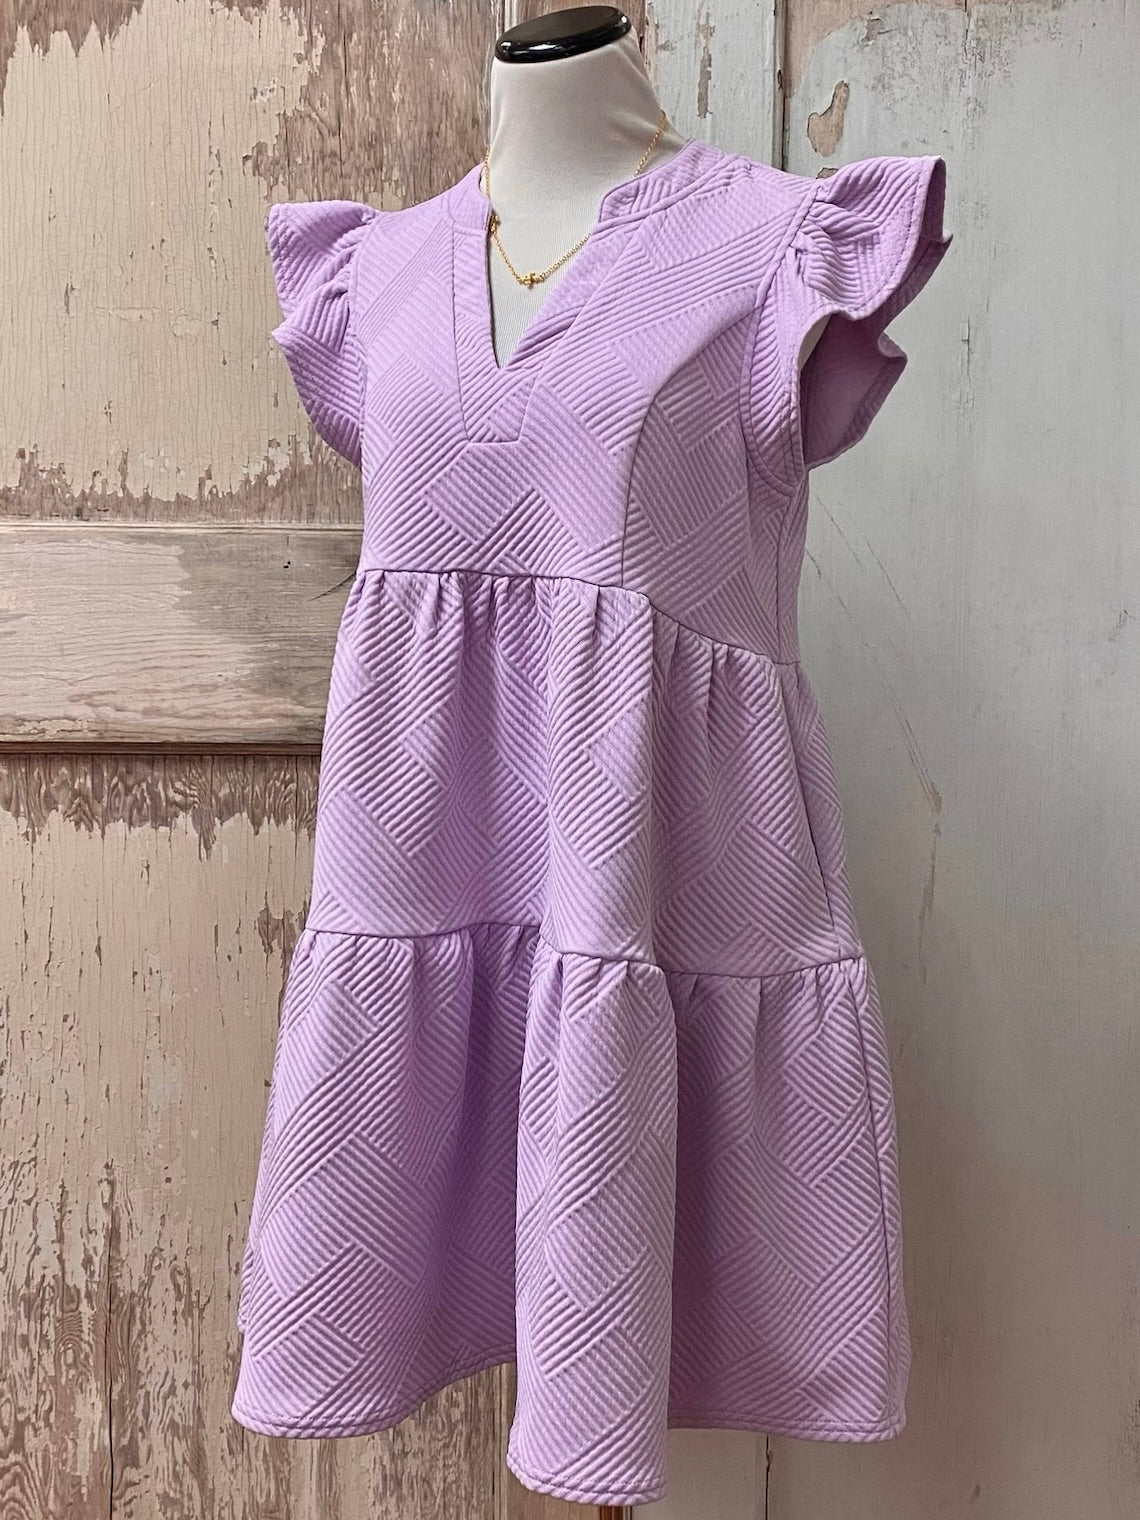 Jacquard Knit Dress | S-2XL